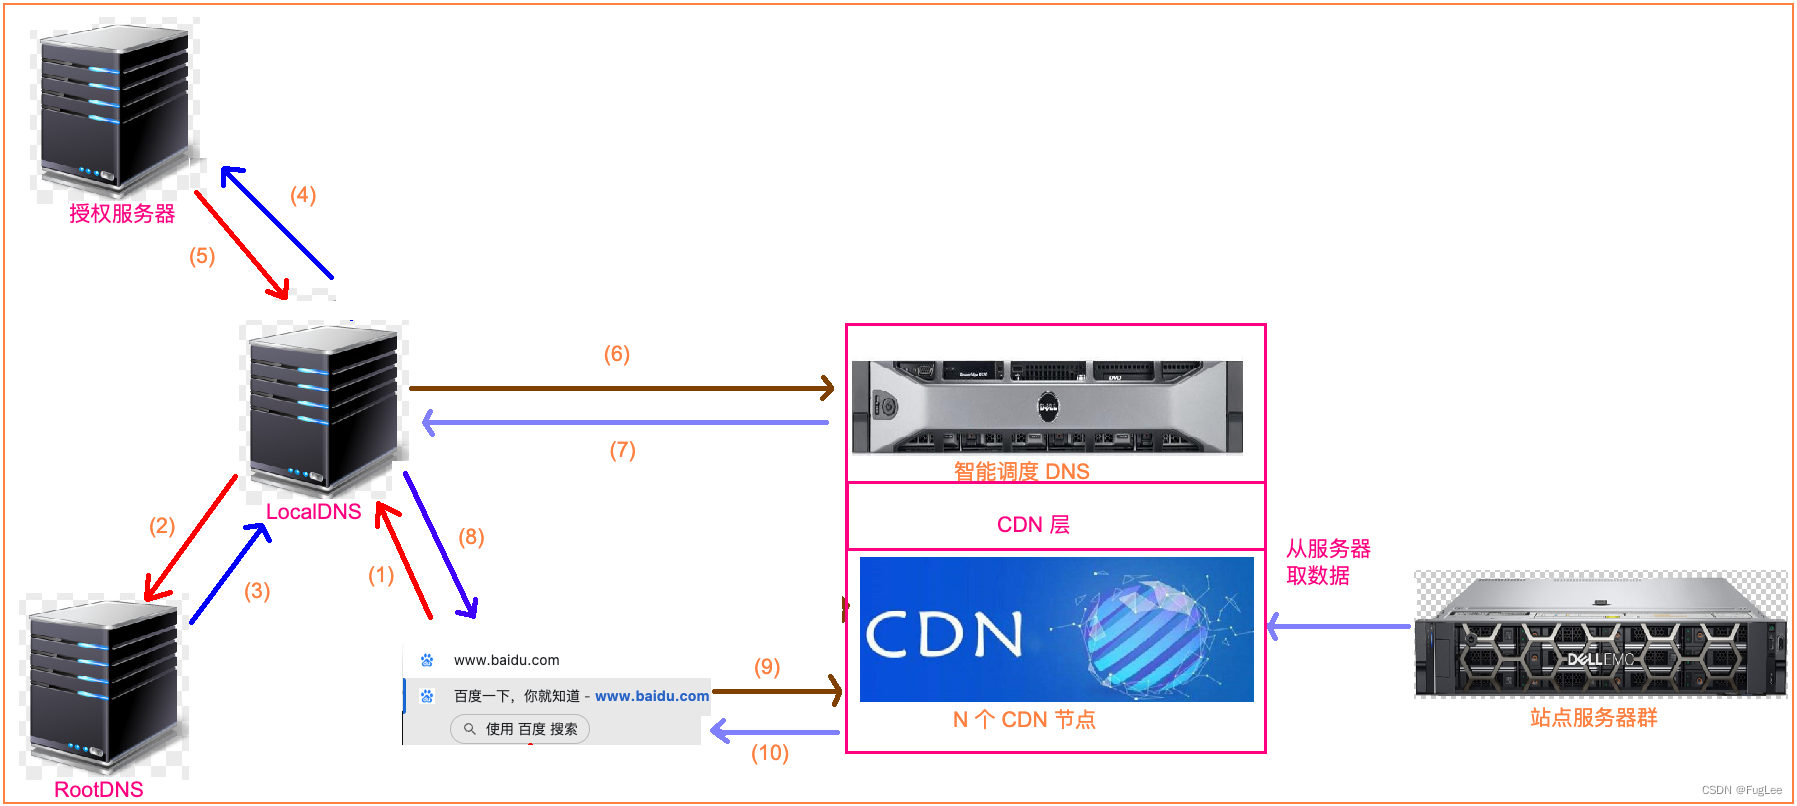 计算机网络(第十二弹) --- 传统访问过程与 CDN 访问过程对比